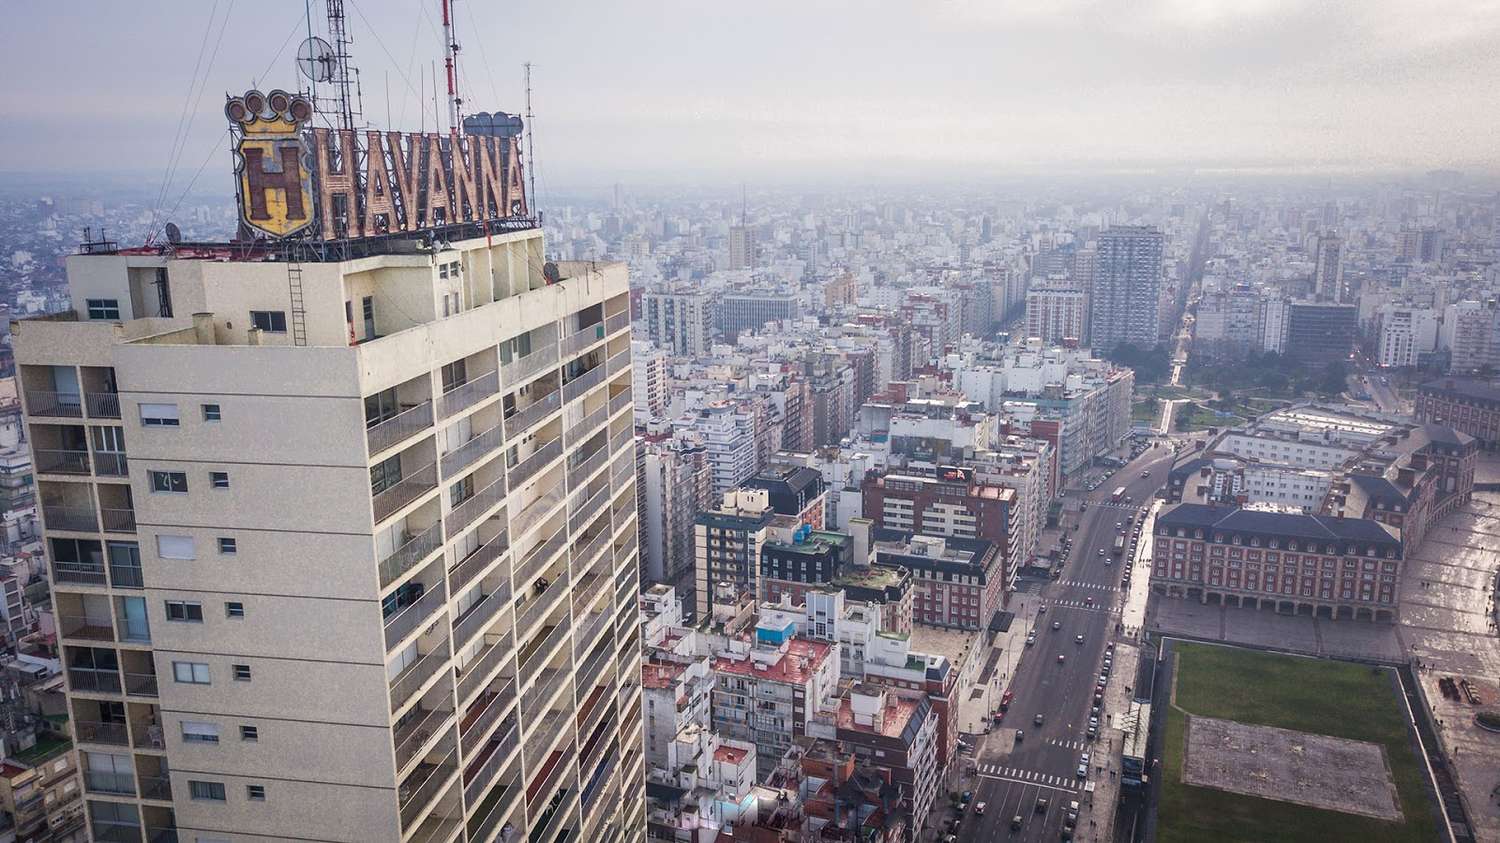 ¿Cómo actuaría Defensa Civil si una persona escala hasta el piso 20 del edificio Havanna?